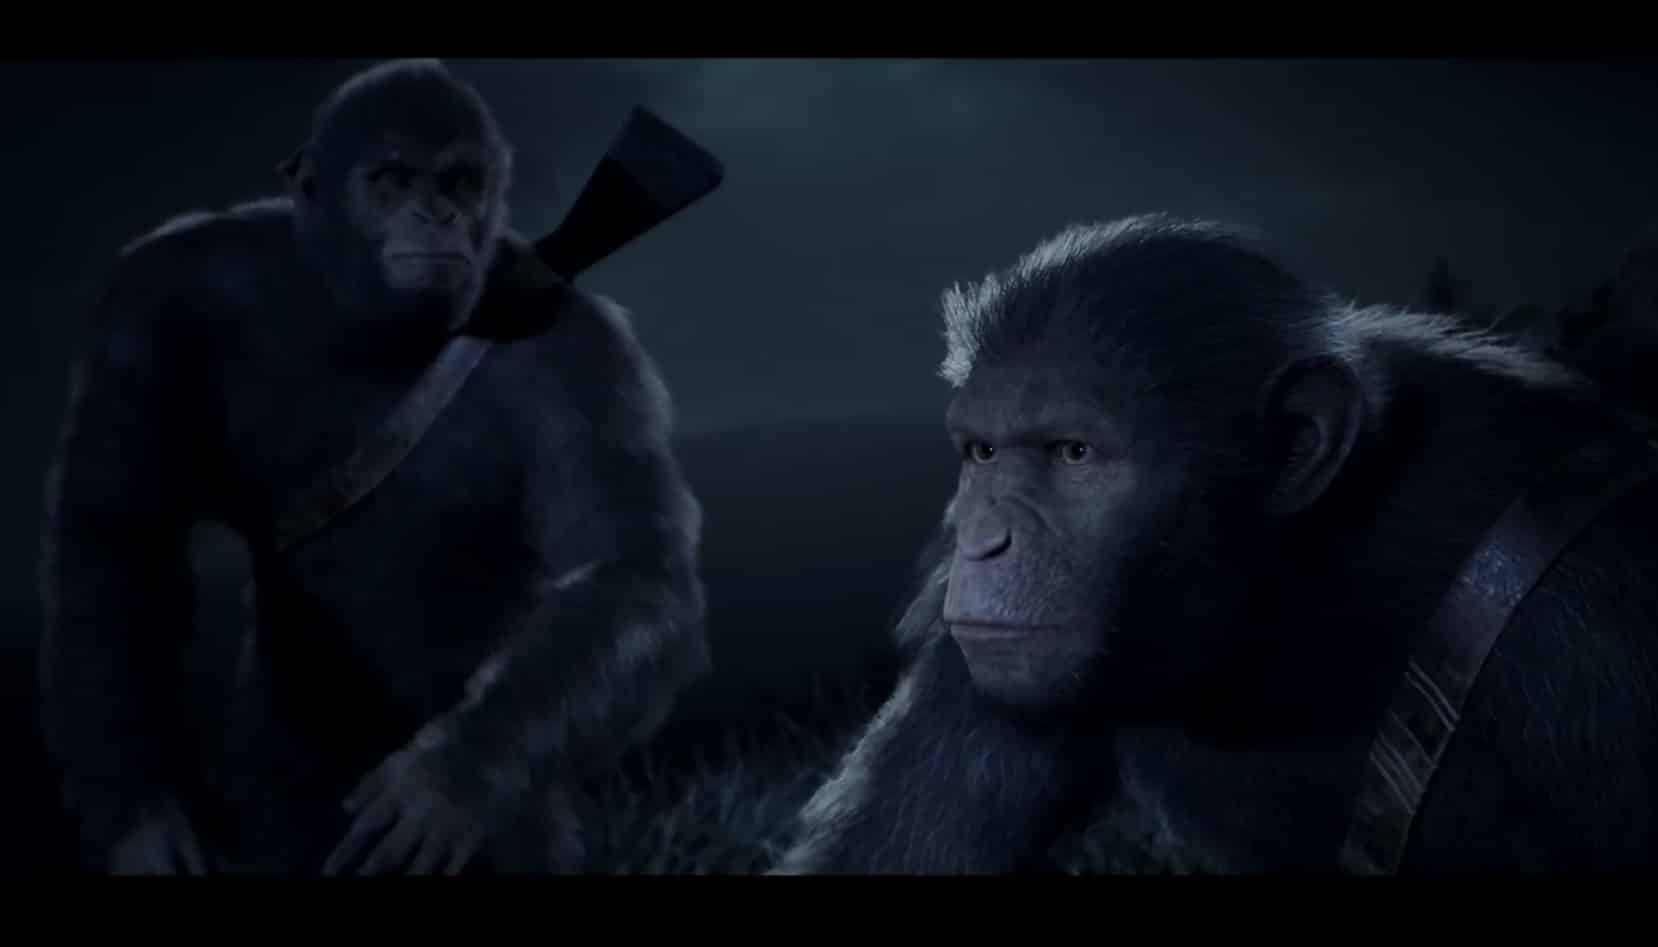 เลือกฝ่ายที่คุณต้องการ Planet of the Apes: Last Frontier เตรียมออกปีนี้!